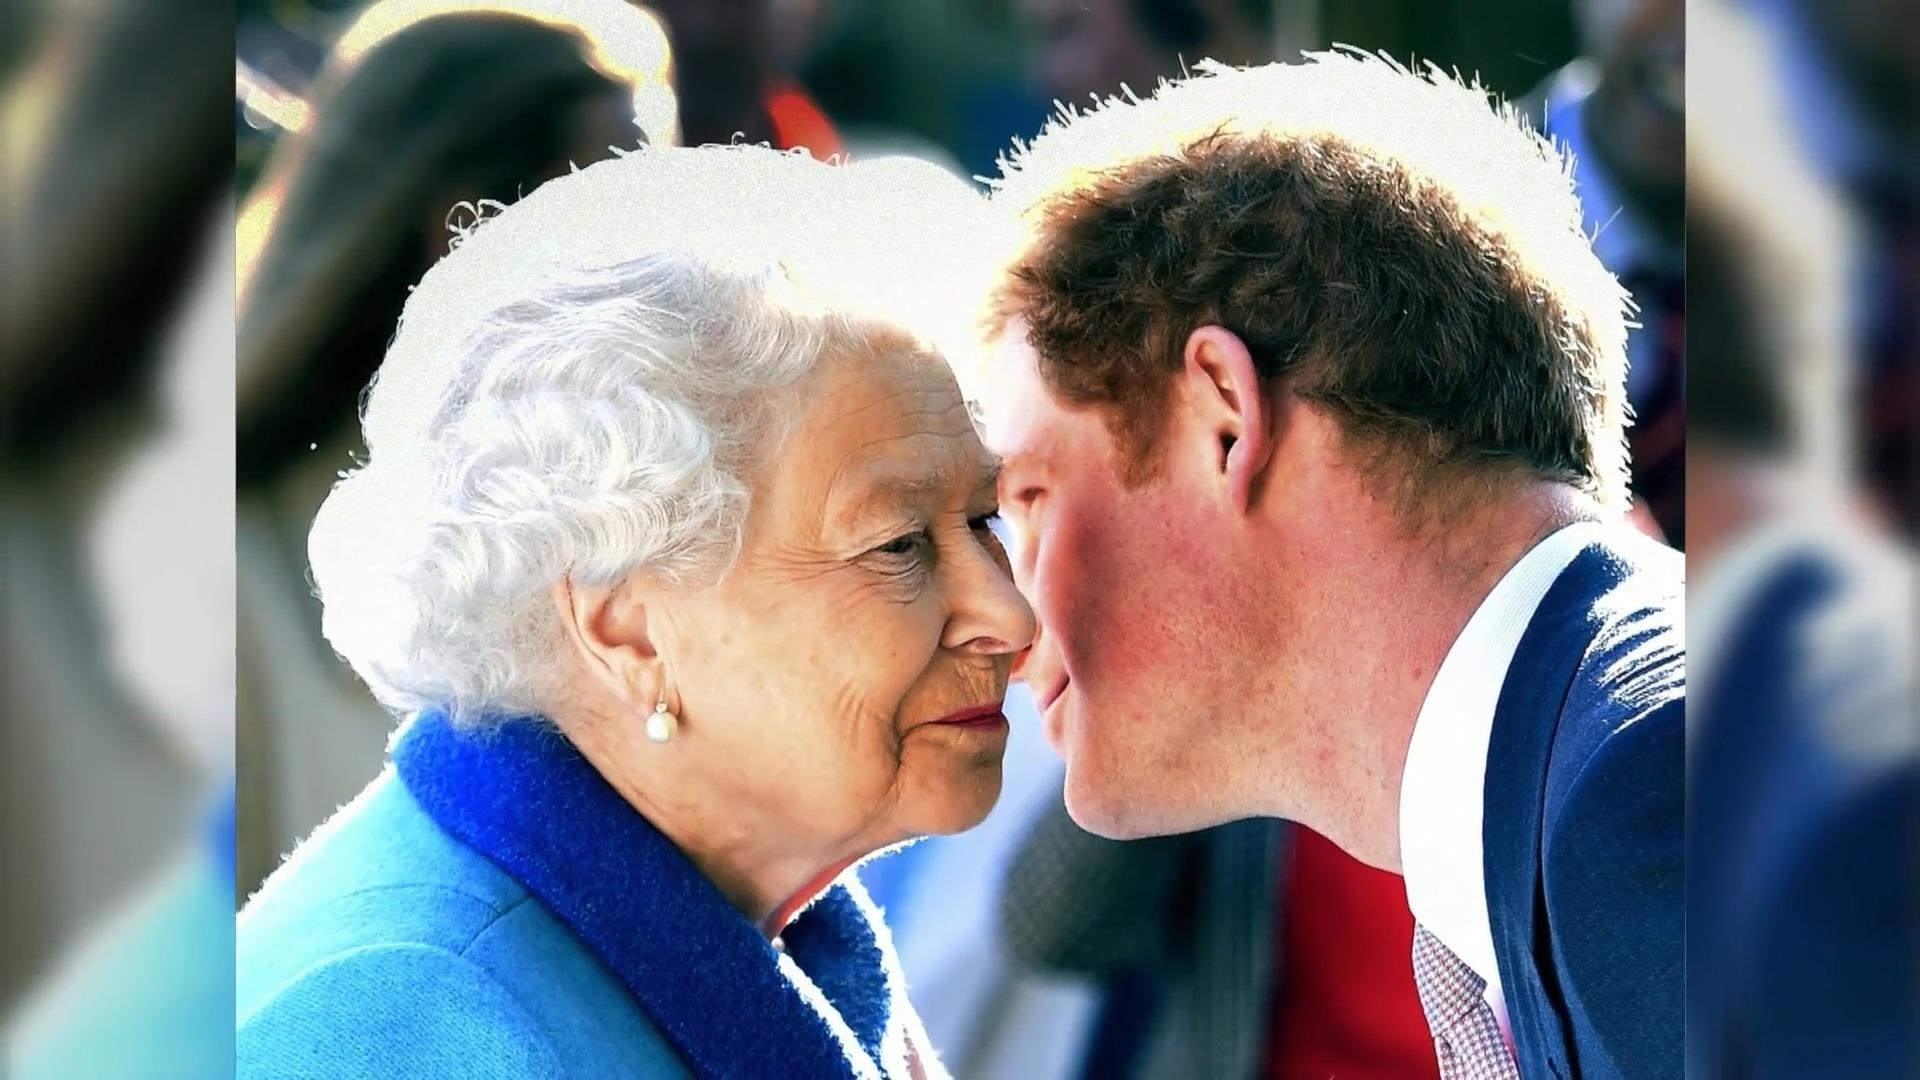 El príncipe Harry y la reina: estuvieron tan cerca de conmoverse los recuerdos